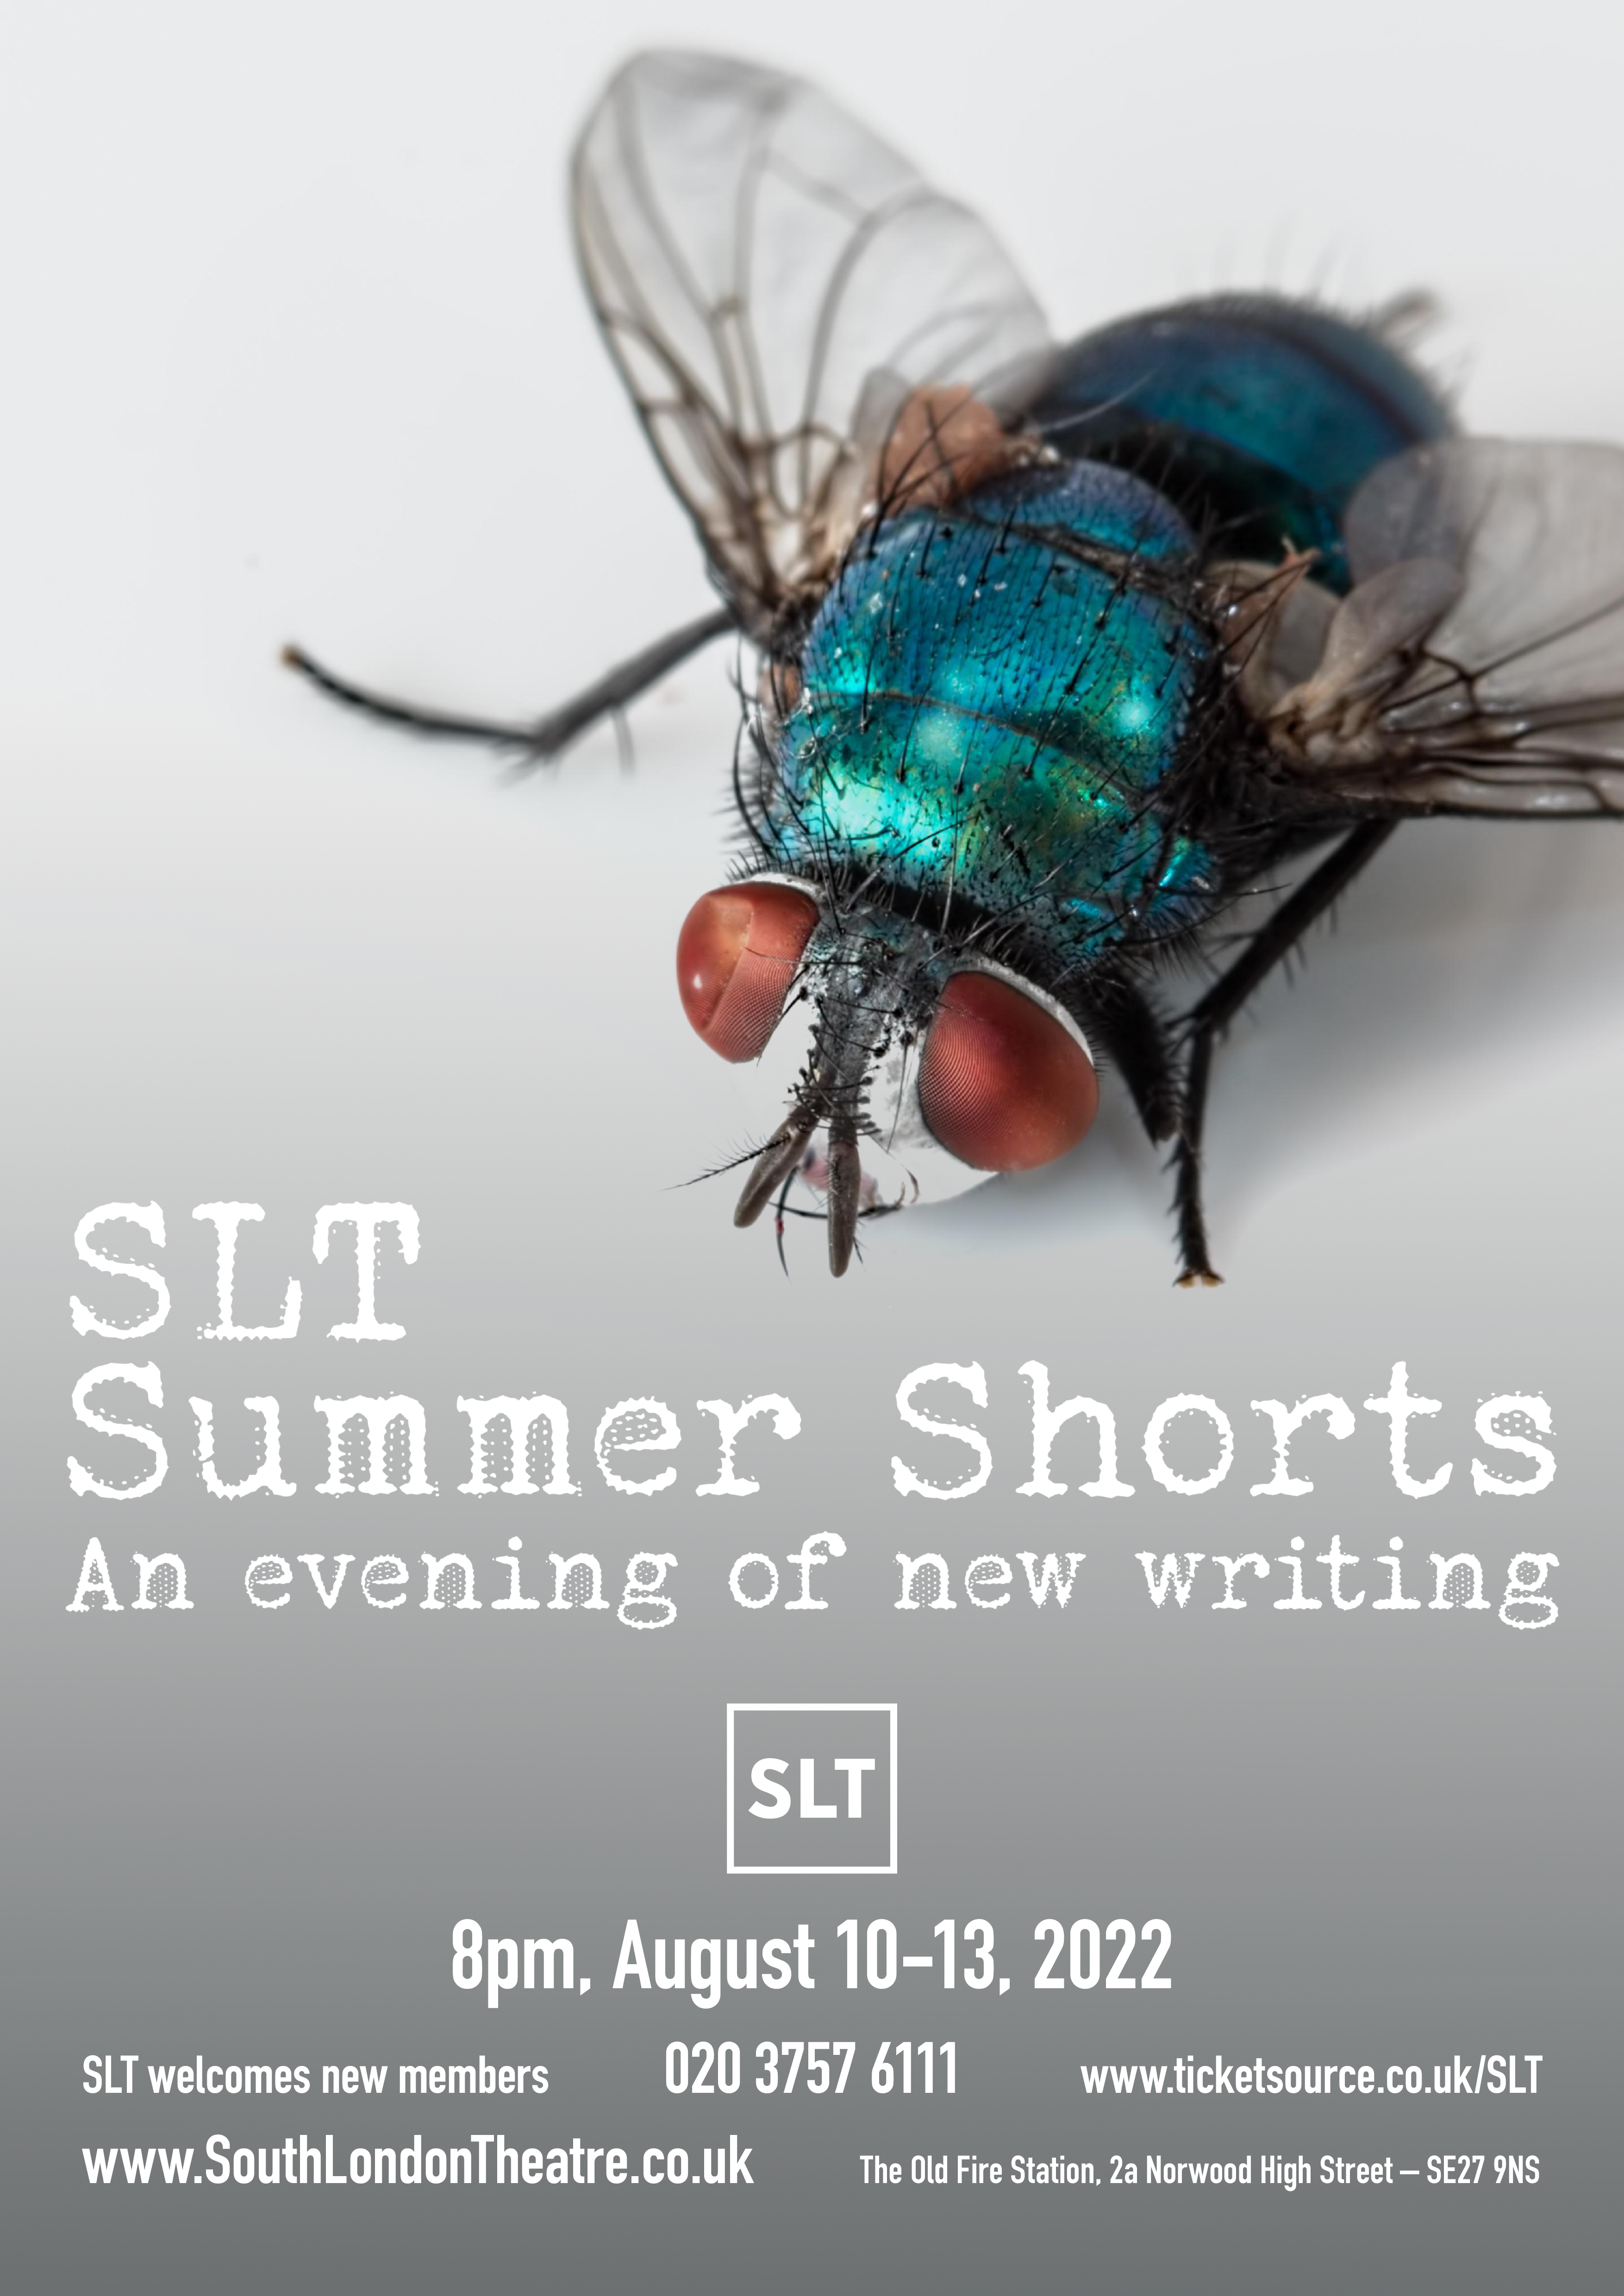 Official SLT Summer Shorts Poster image